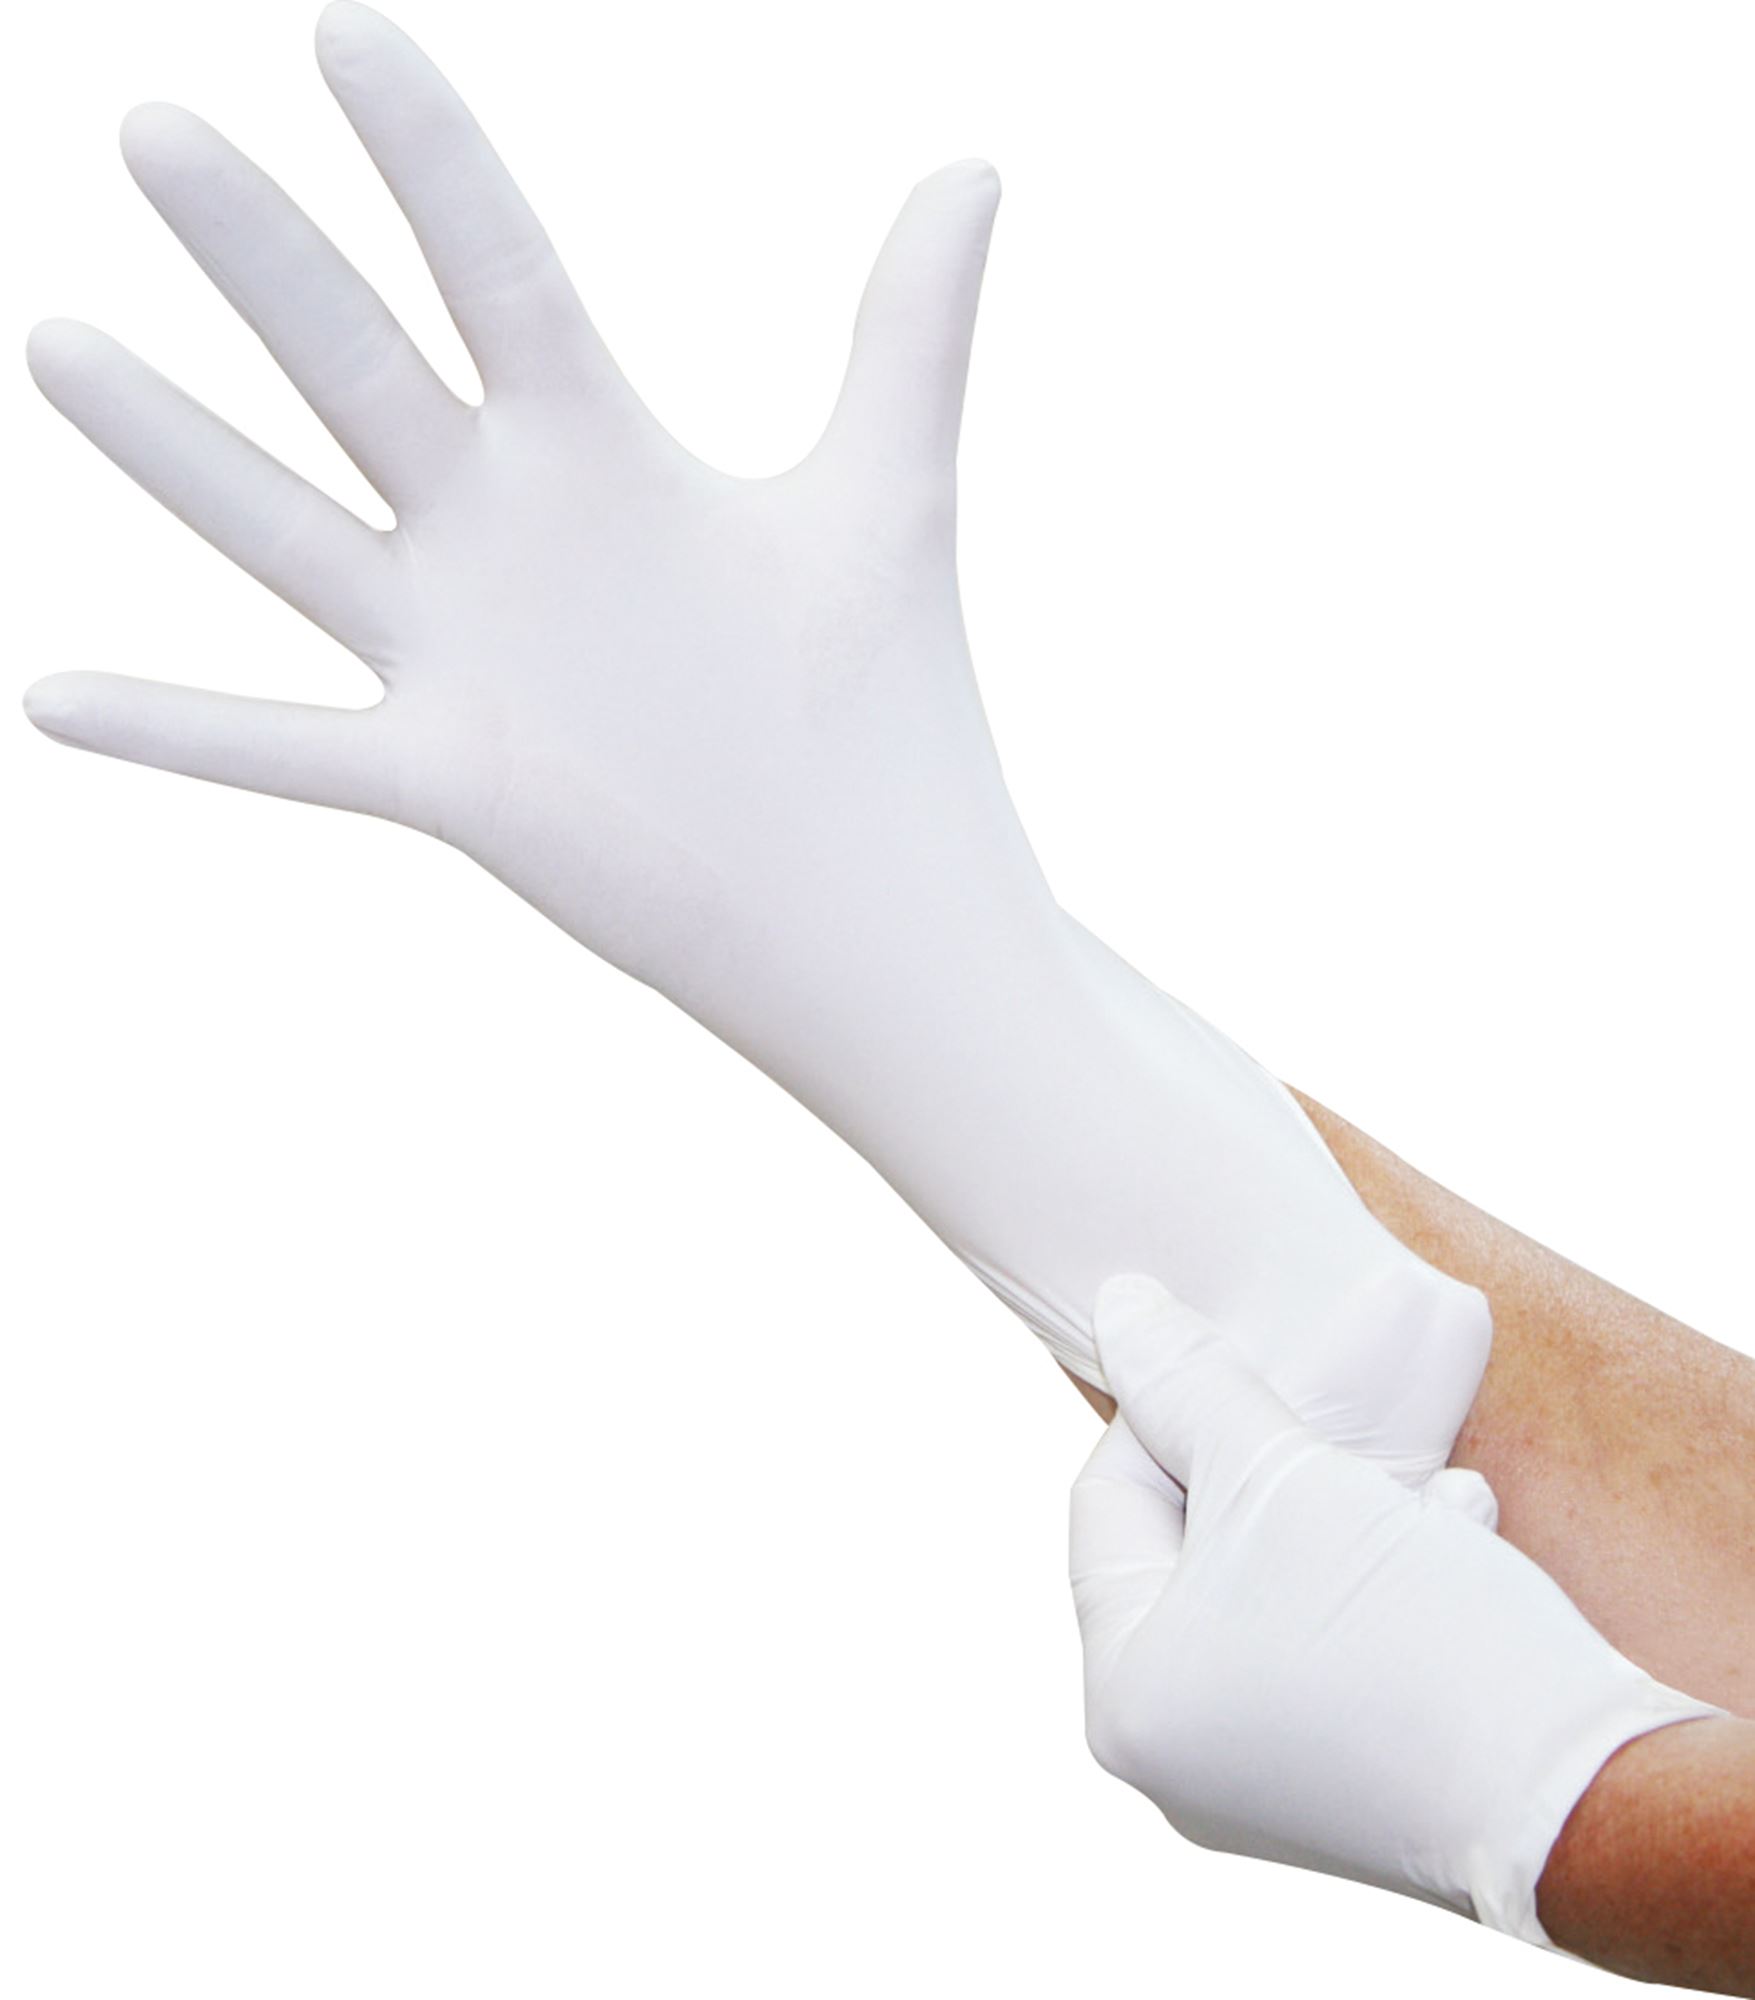 1 Asdomo Lot de 100 gants jetables en caoutchouc blanc antidérapants et imperméables pour examen médical blanc S 